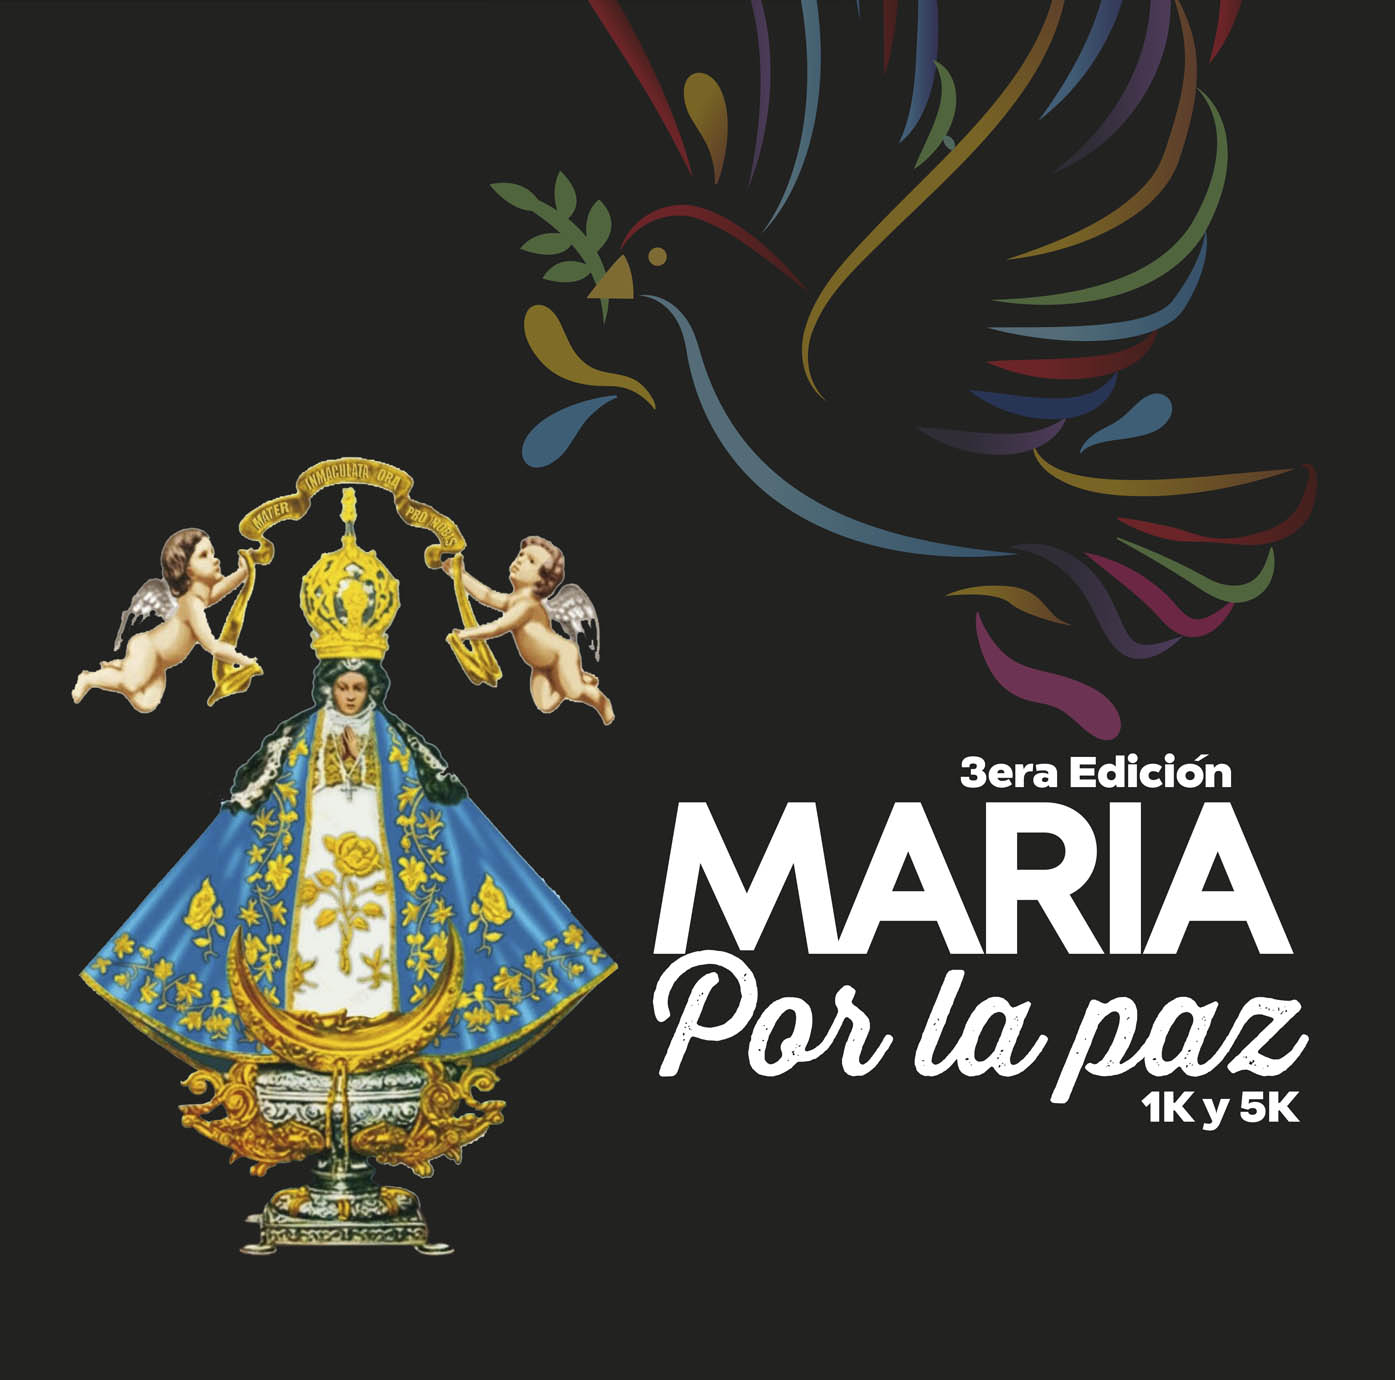 María por la paz 1K y 5K